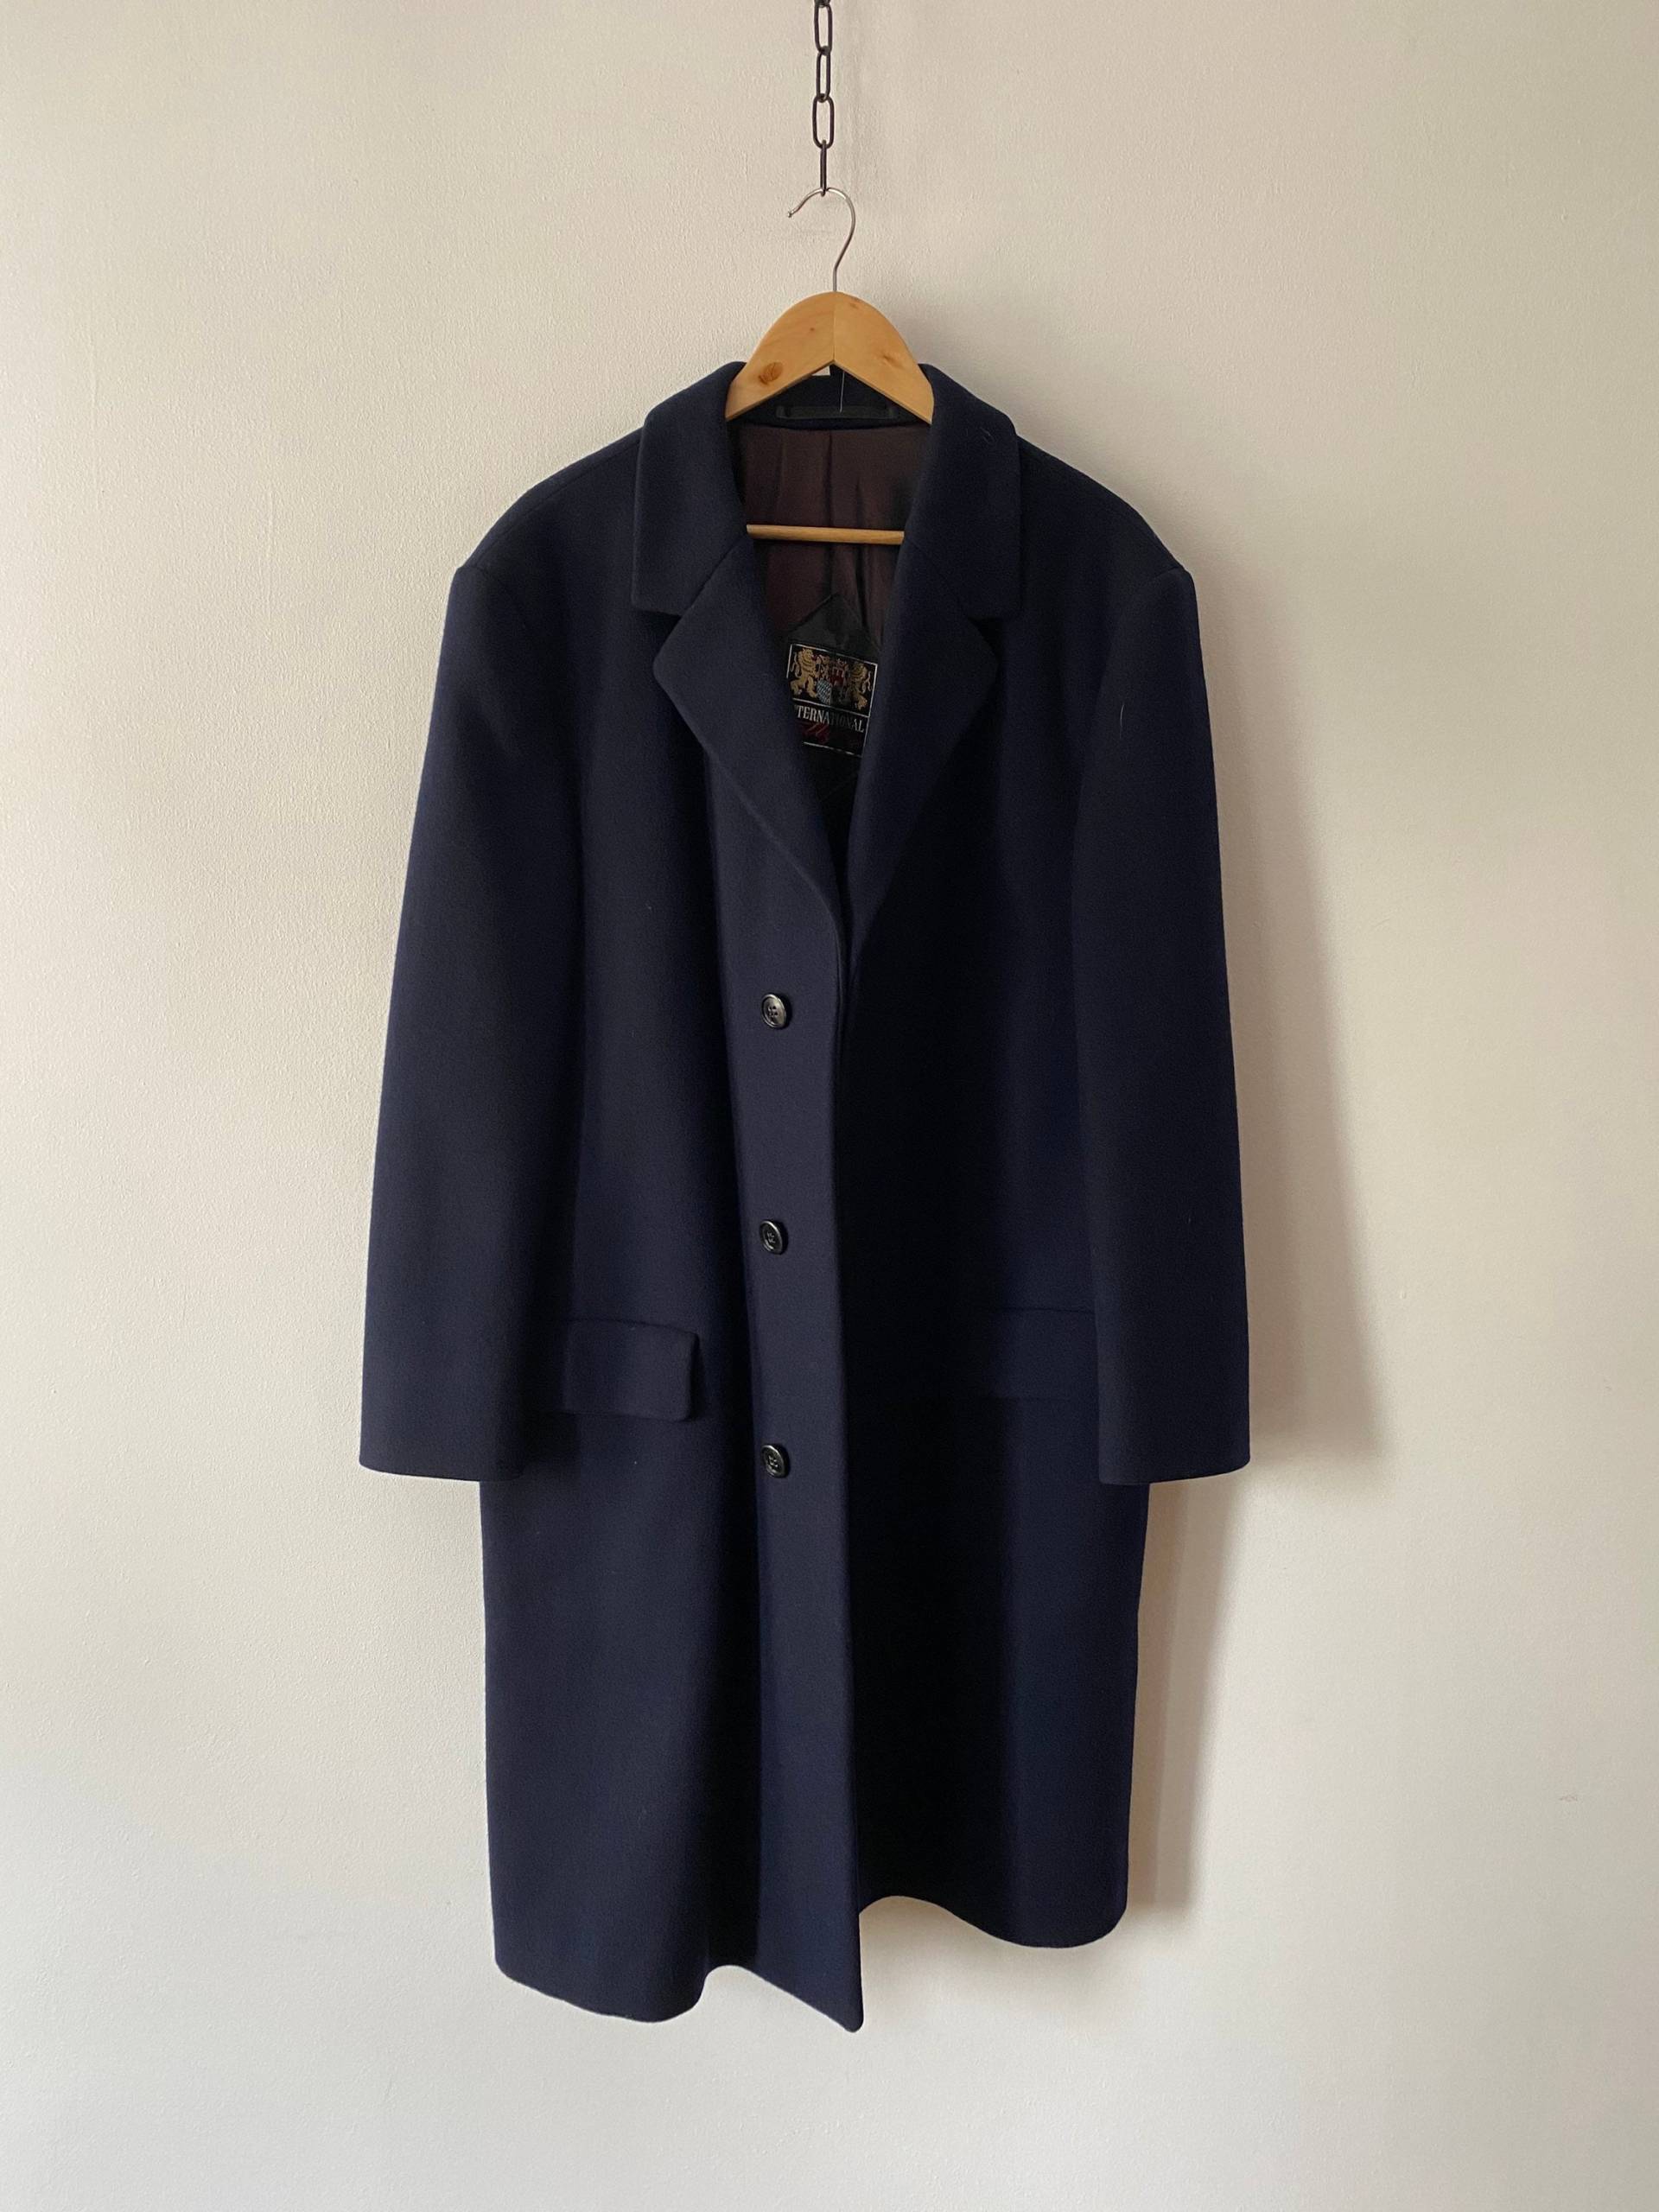 Erstaunlicher Vintage Oxford Blauer Wolle Internationaler Stil Trenchcoat Für Herren, Made in Germany, Passend L-xl von LadsOnWheels